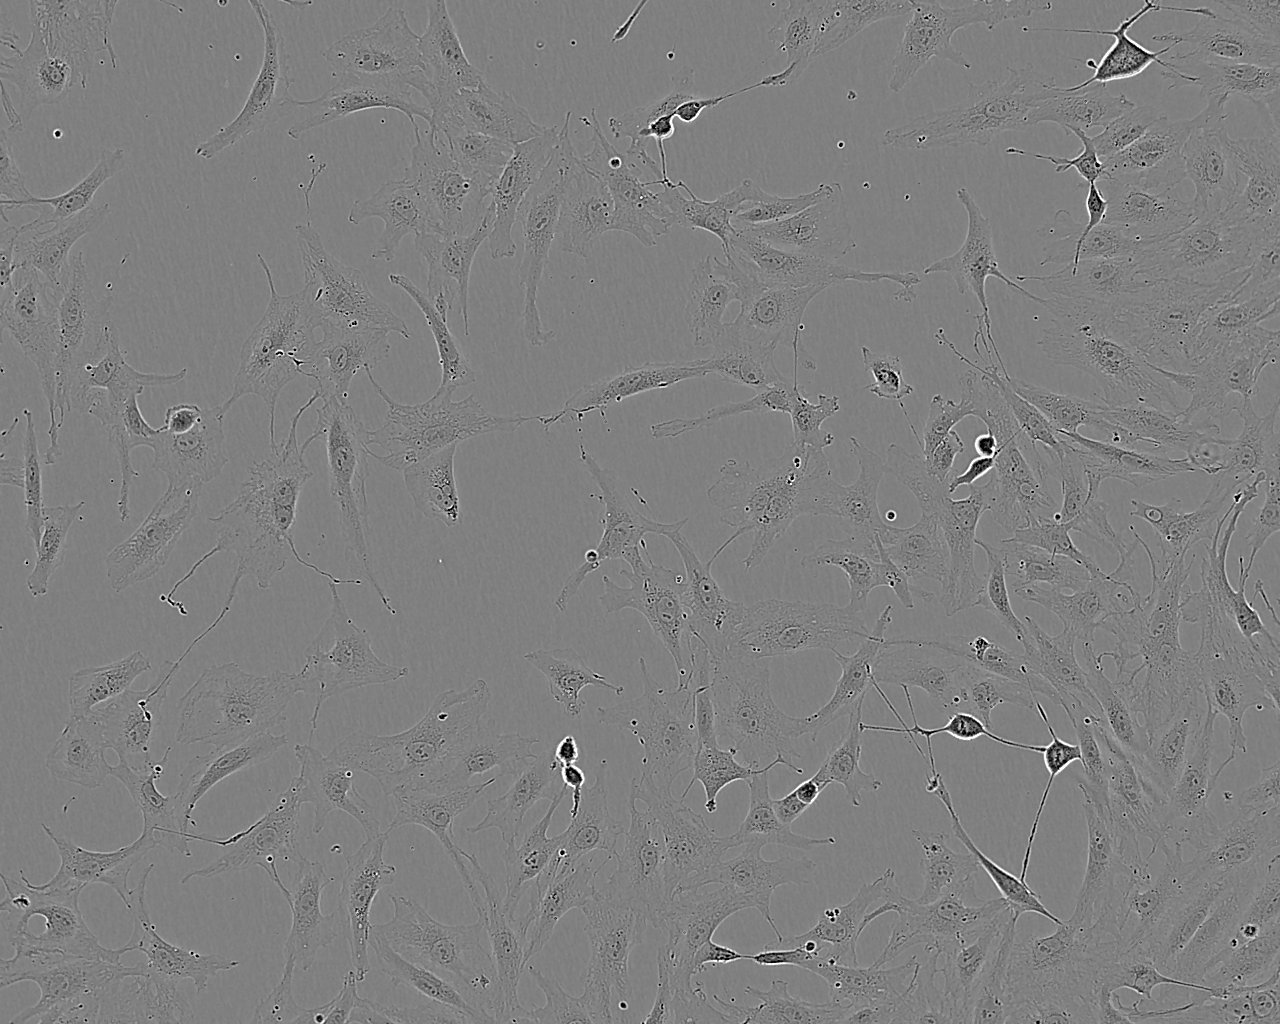 PT-K75 Cell:猪鼻甲黏膜成纤维细胞系,PT-K75 Cell